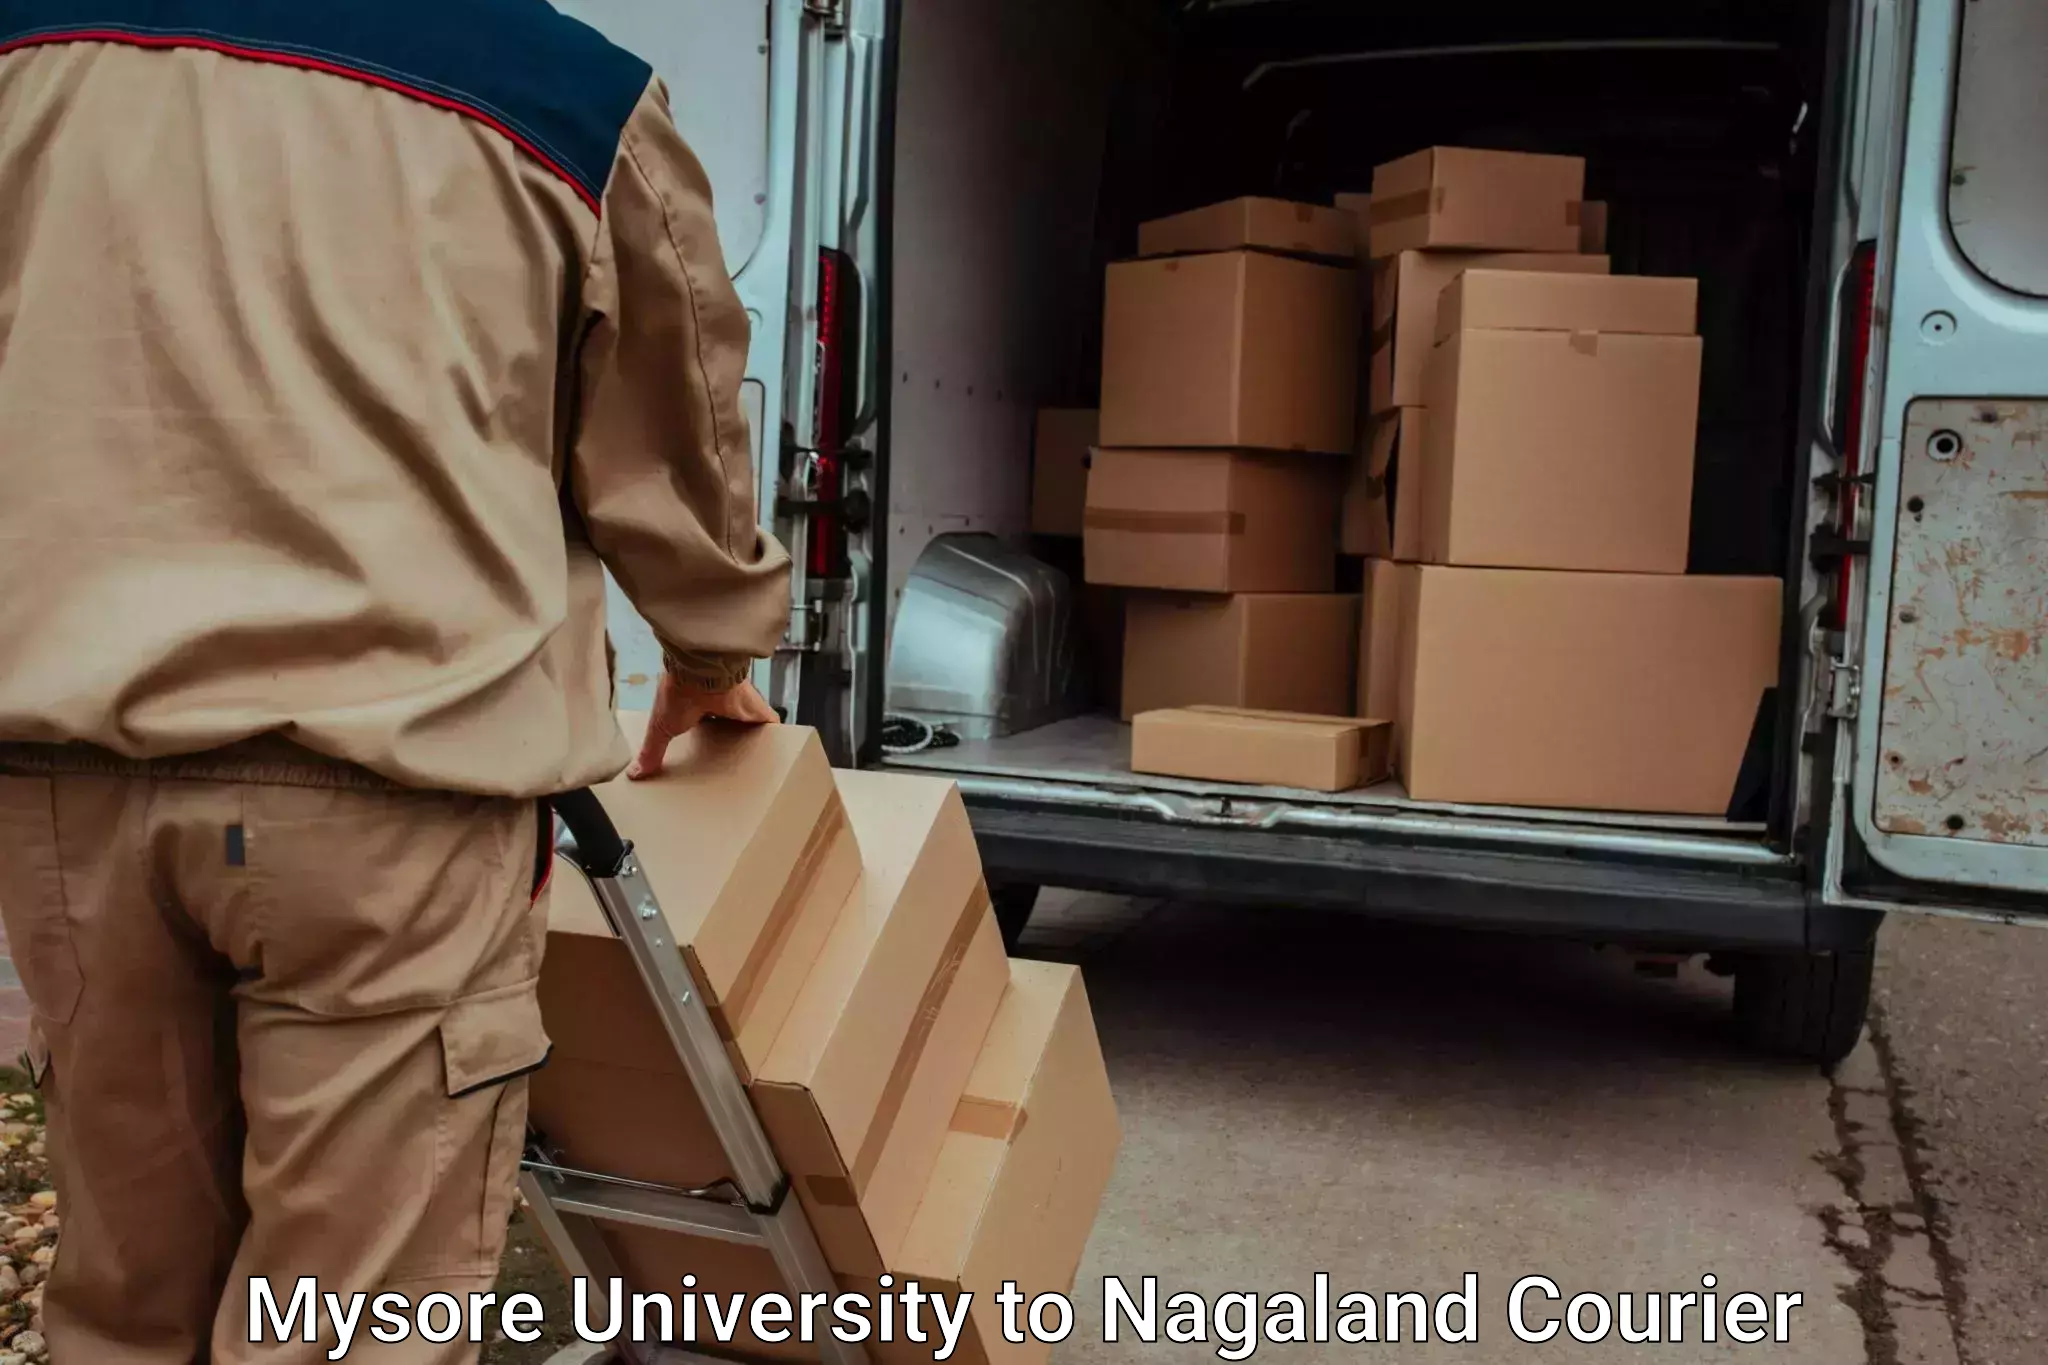 Furniture transport professionals Mysore University to Dimapur